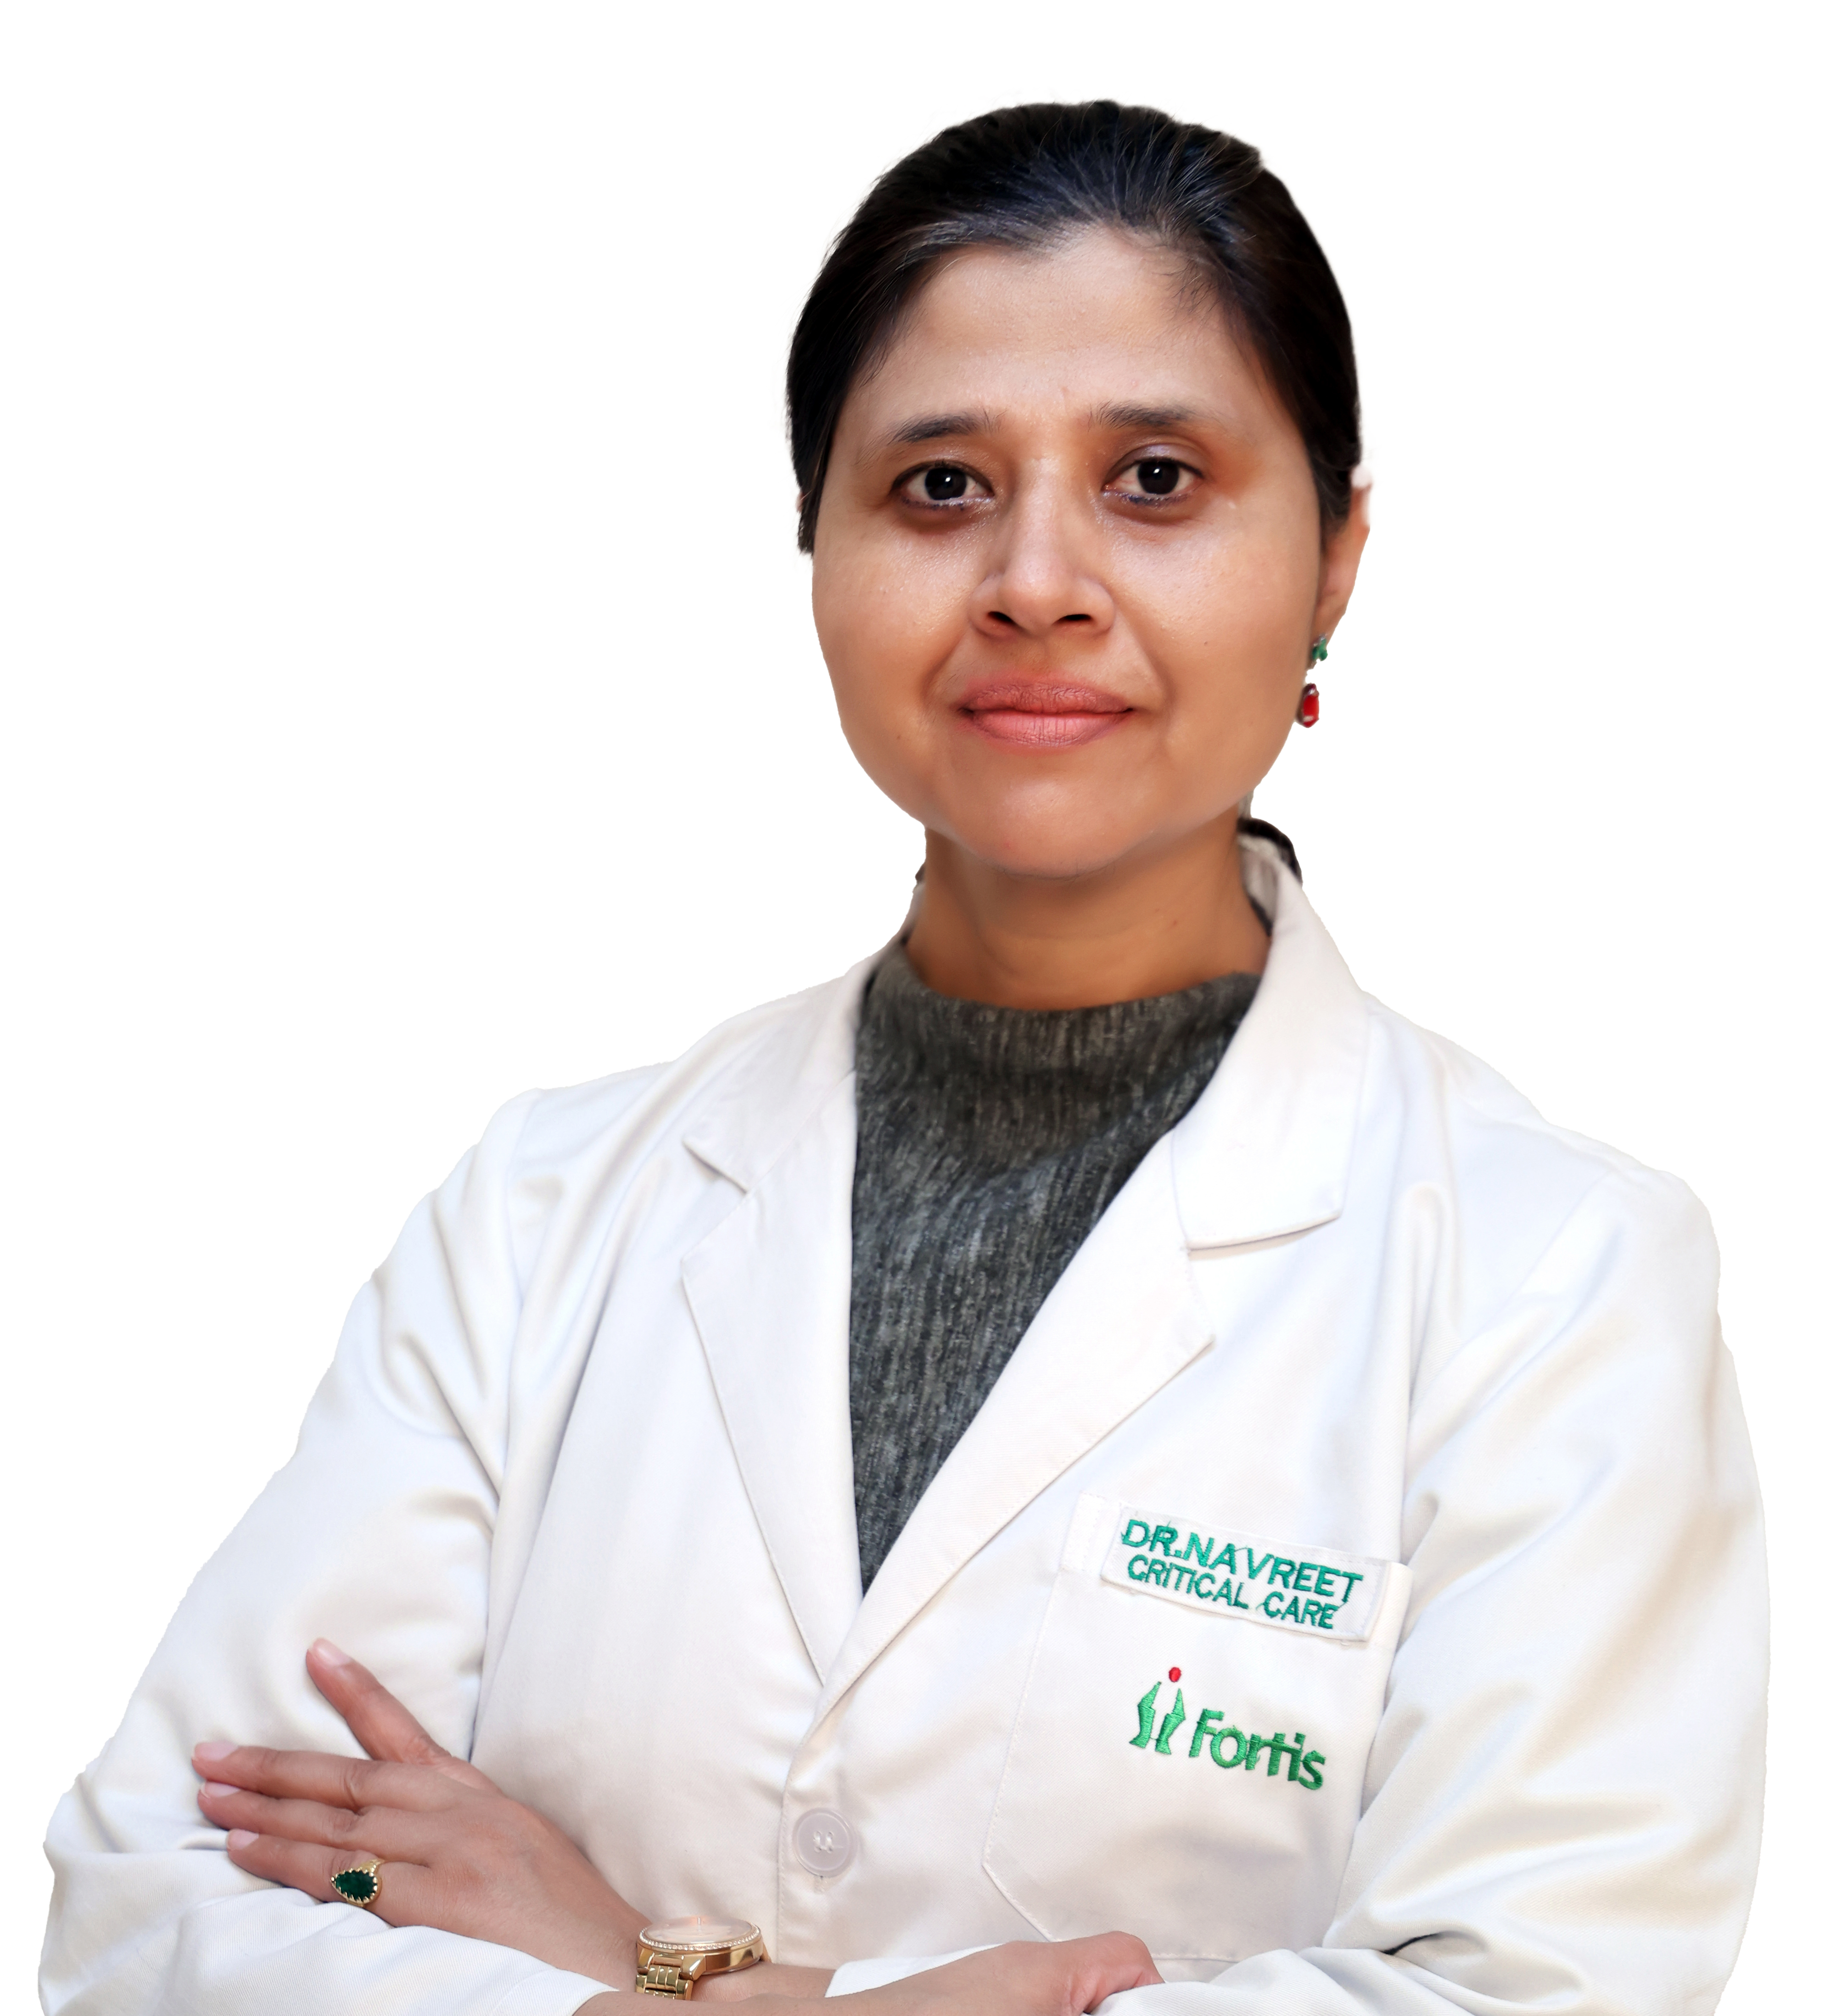 Dr. Navreet Kaur Sandhu